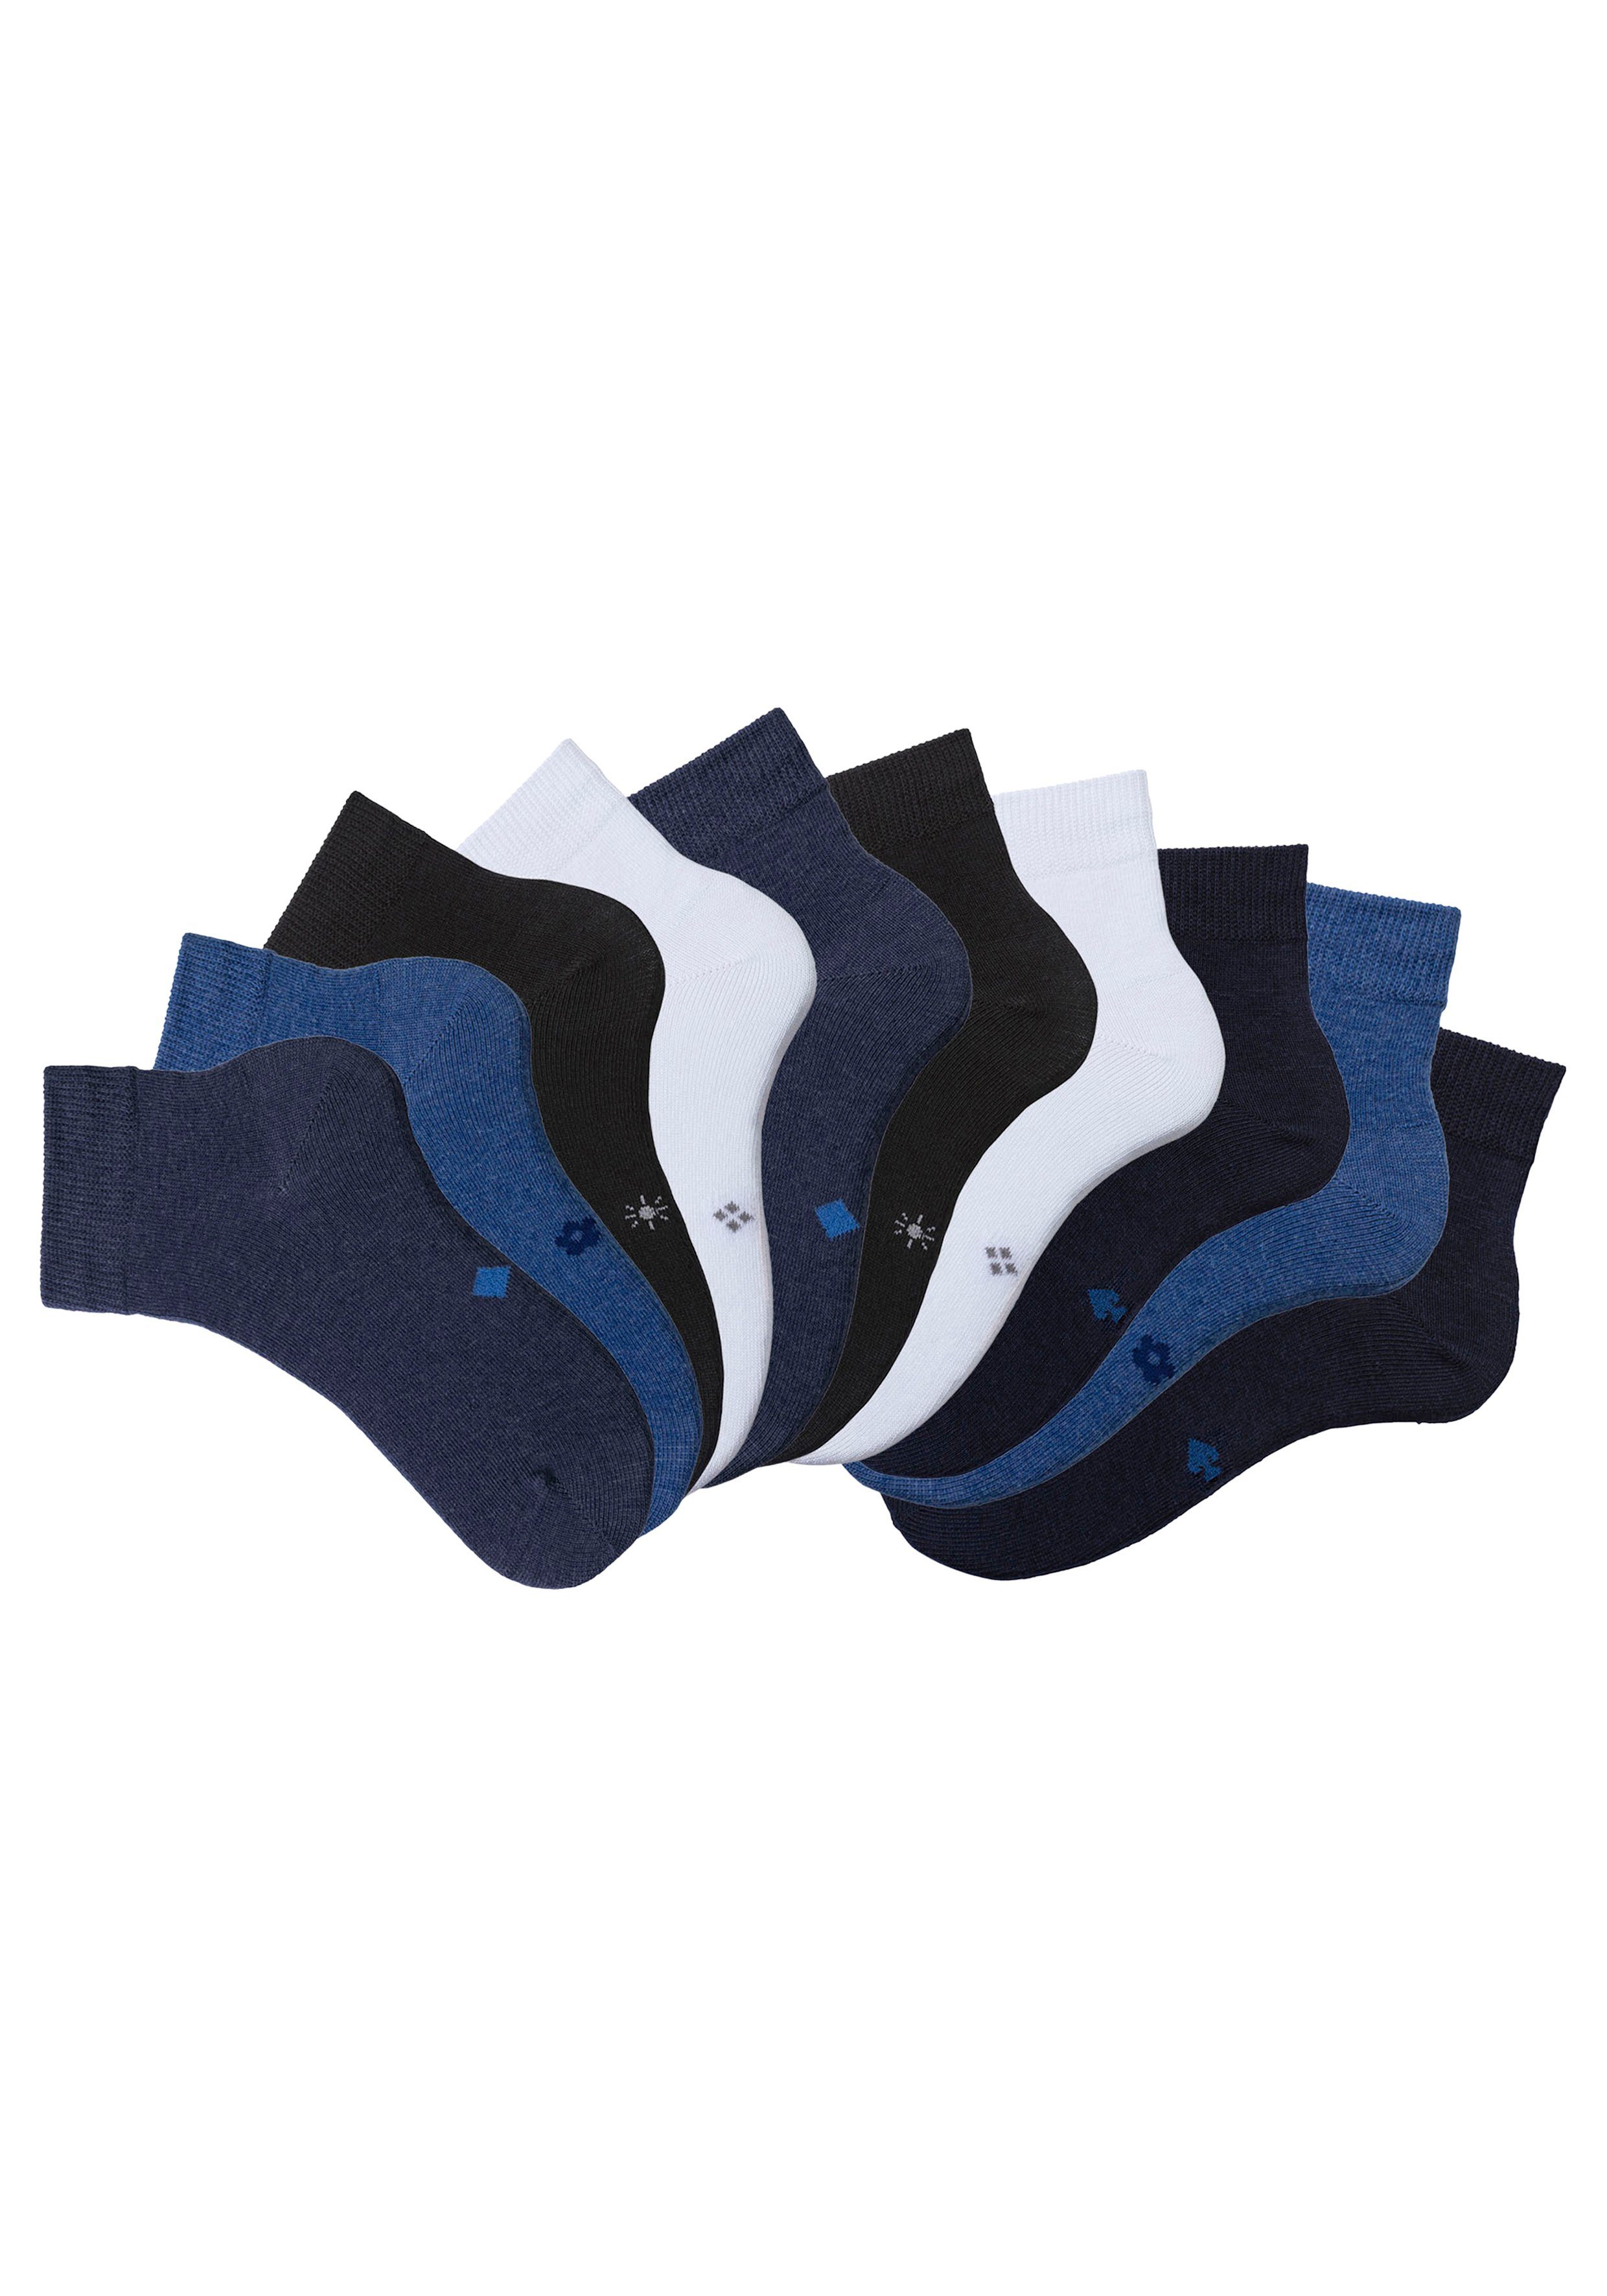 H.I.S Kurzsocken jeans meliert, 2x 2x schwarz, 2x Symbolen blau blau, (Packung, mit 2x eingestrickten 2x weiß 10-Paar) meliert